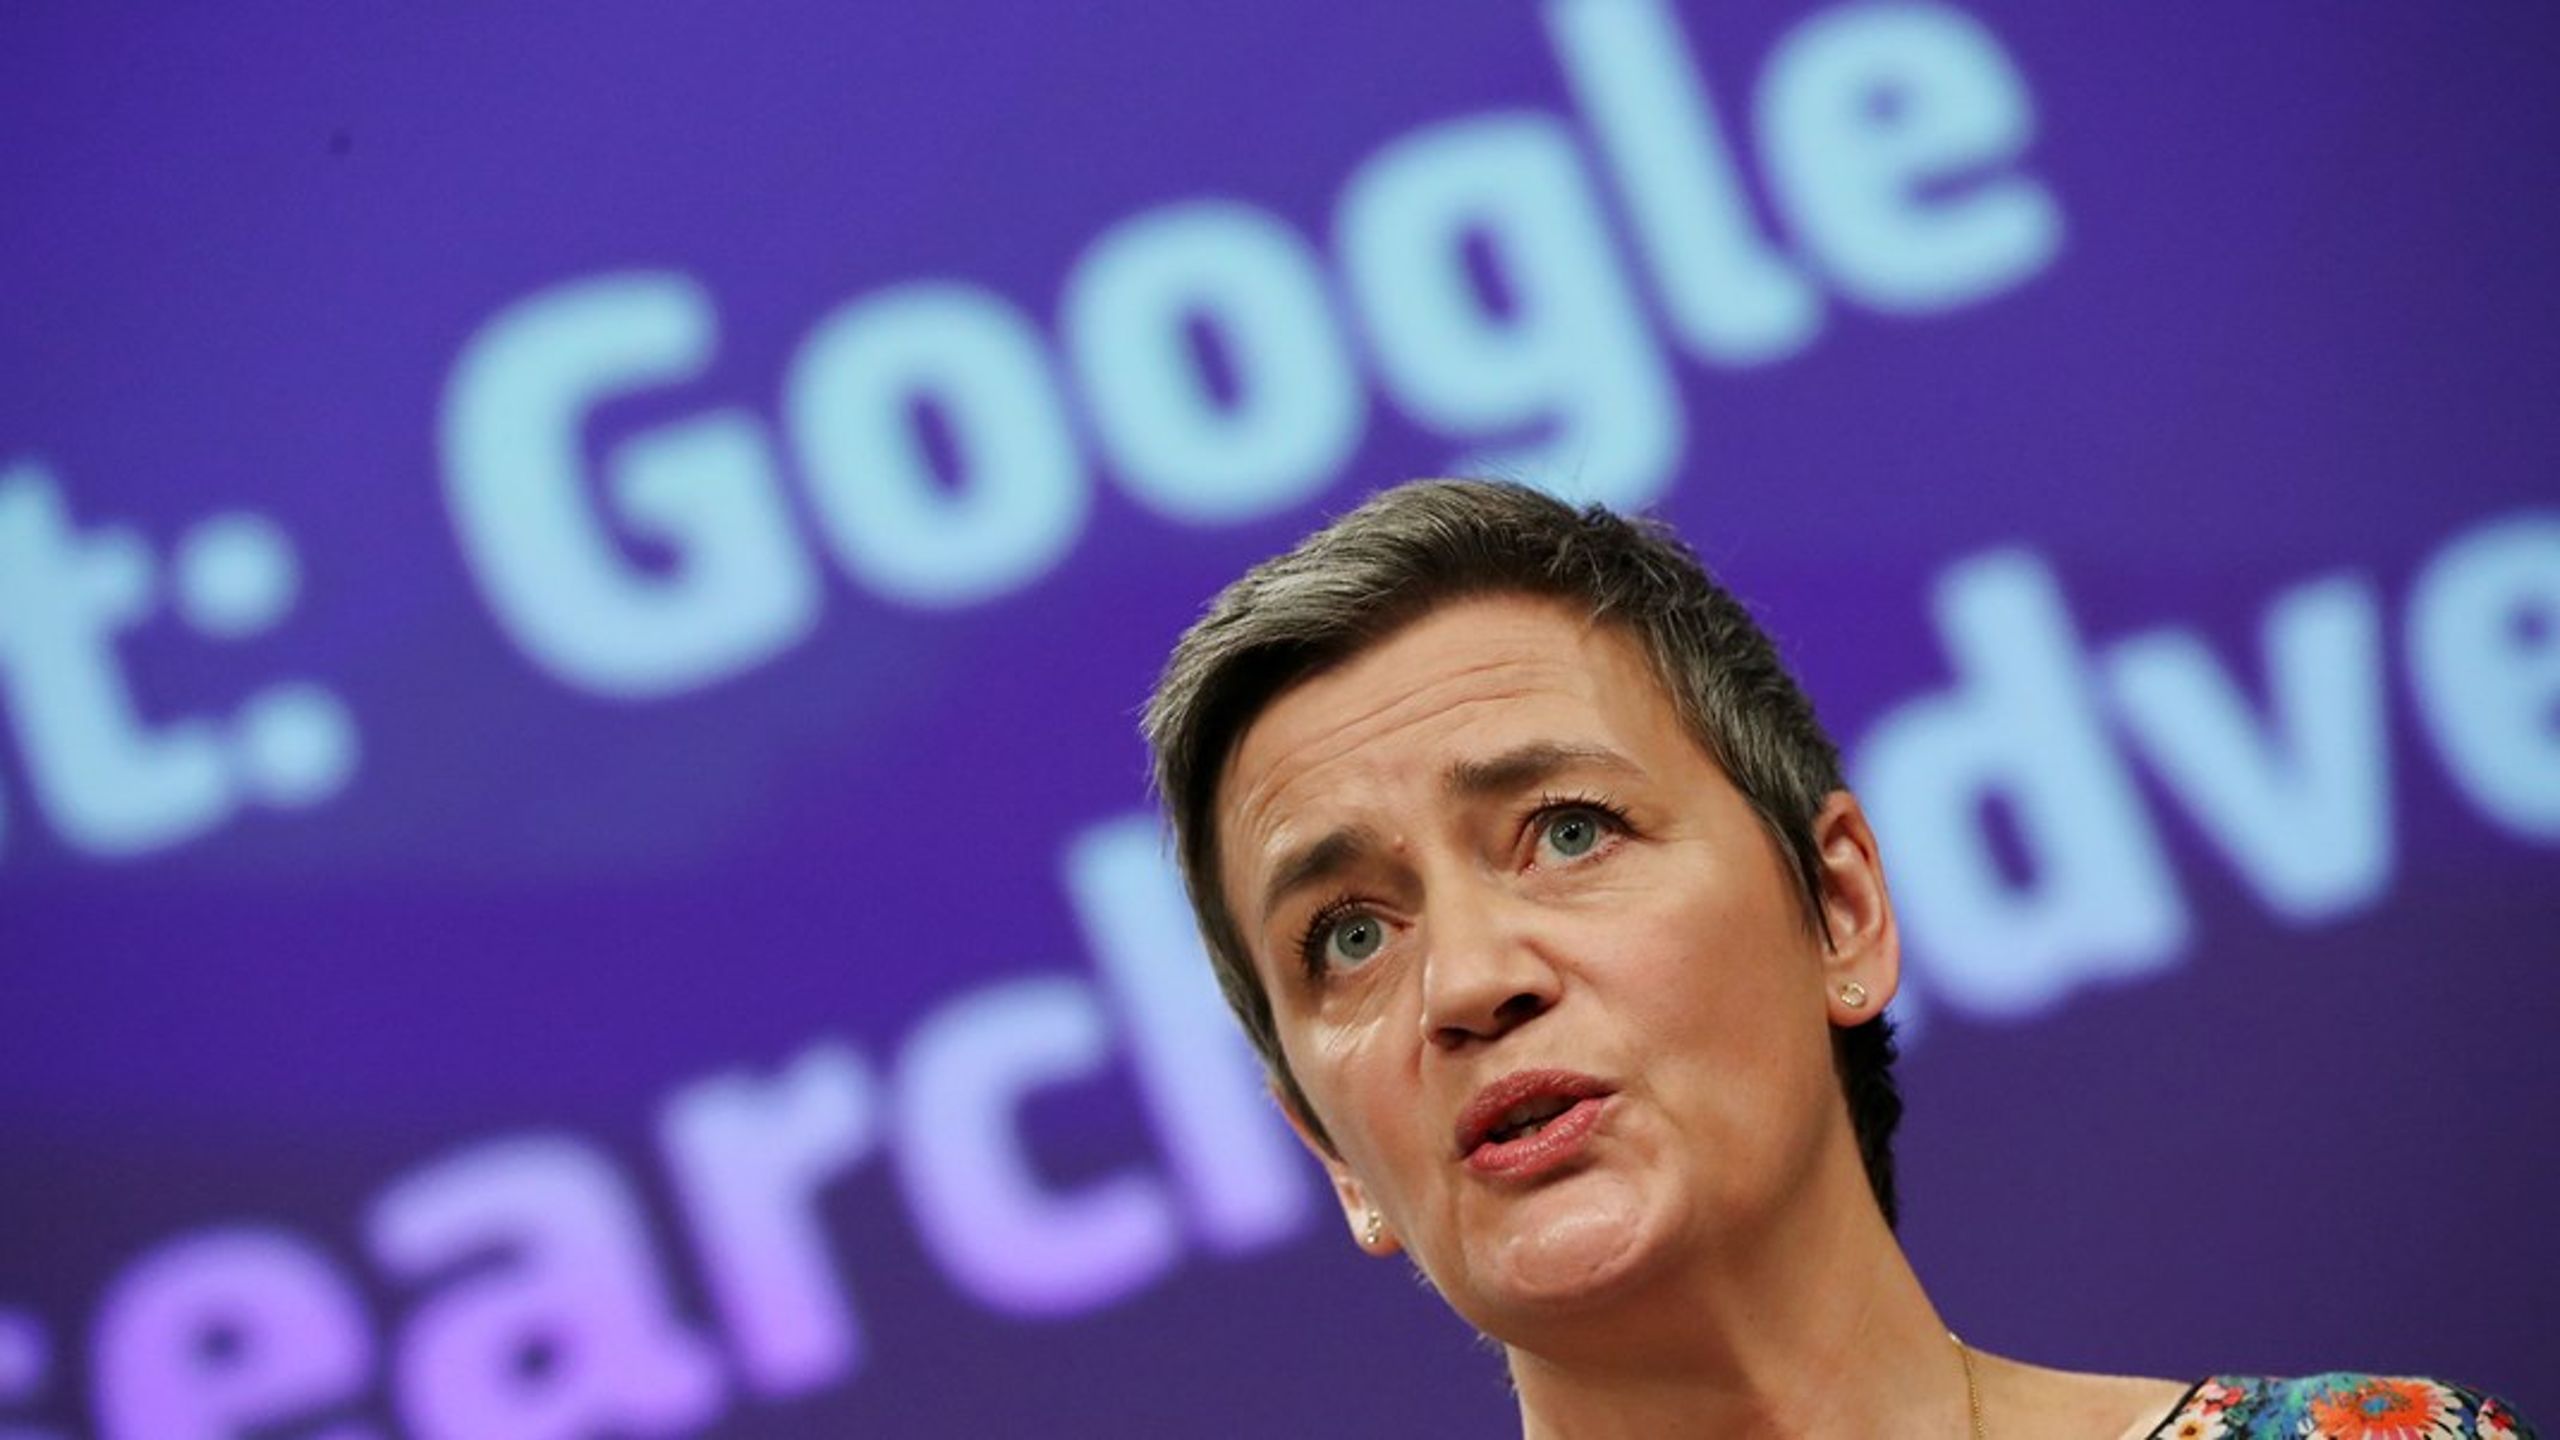 Konkurrencekommissær Margrethe Vestager får onsdag rettens ord for, om hendes sag mod Google holder vand.